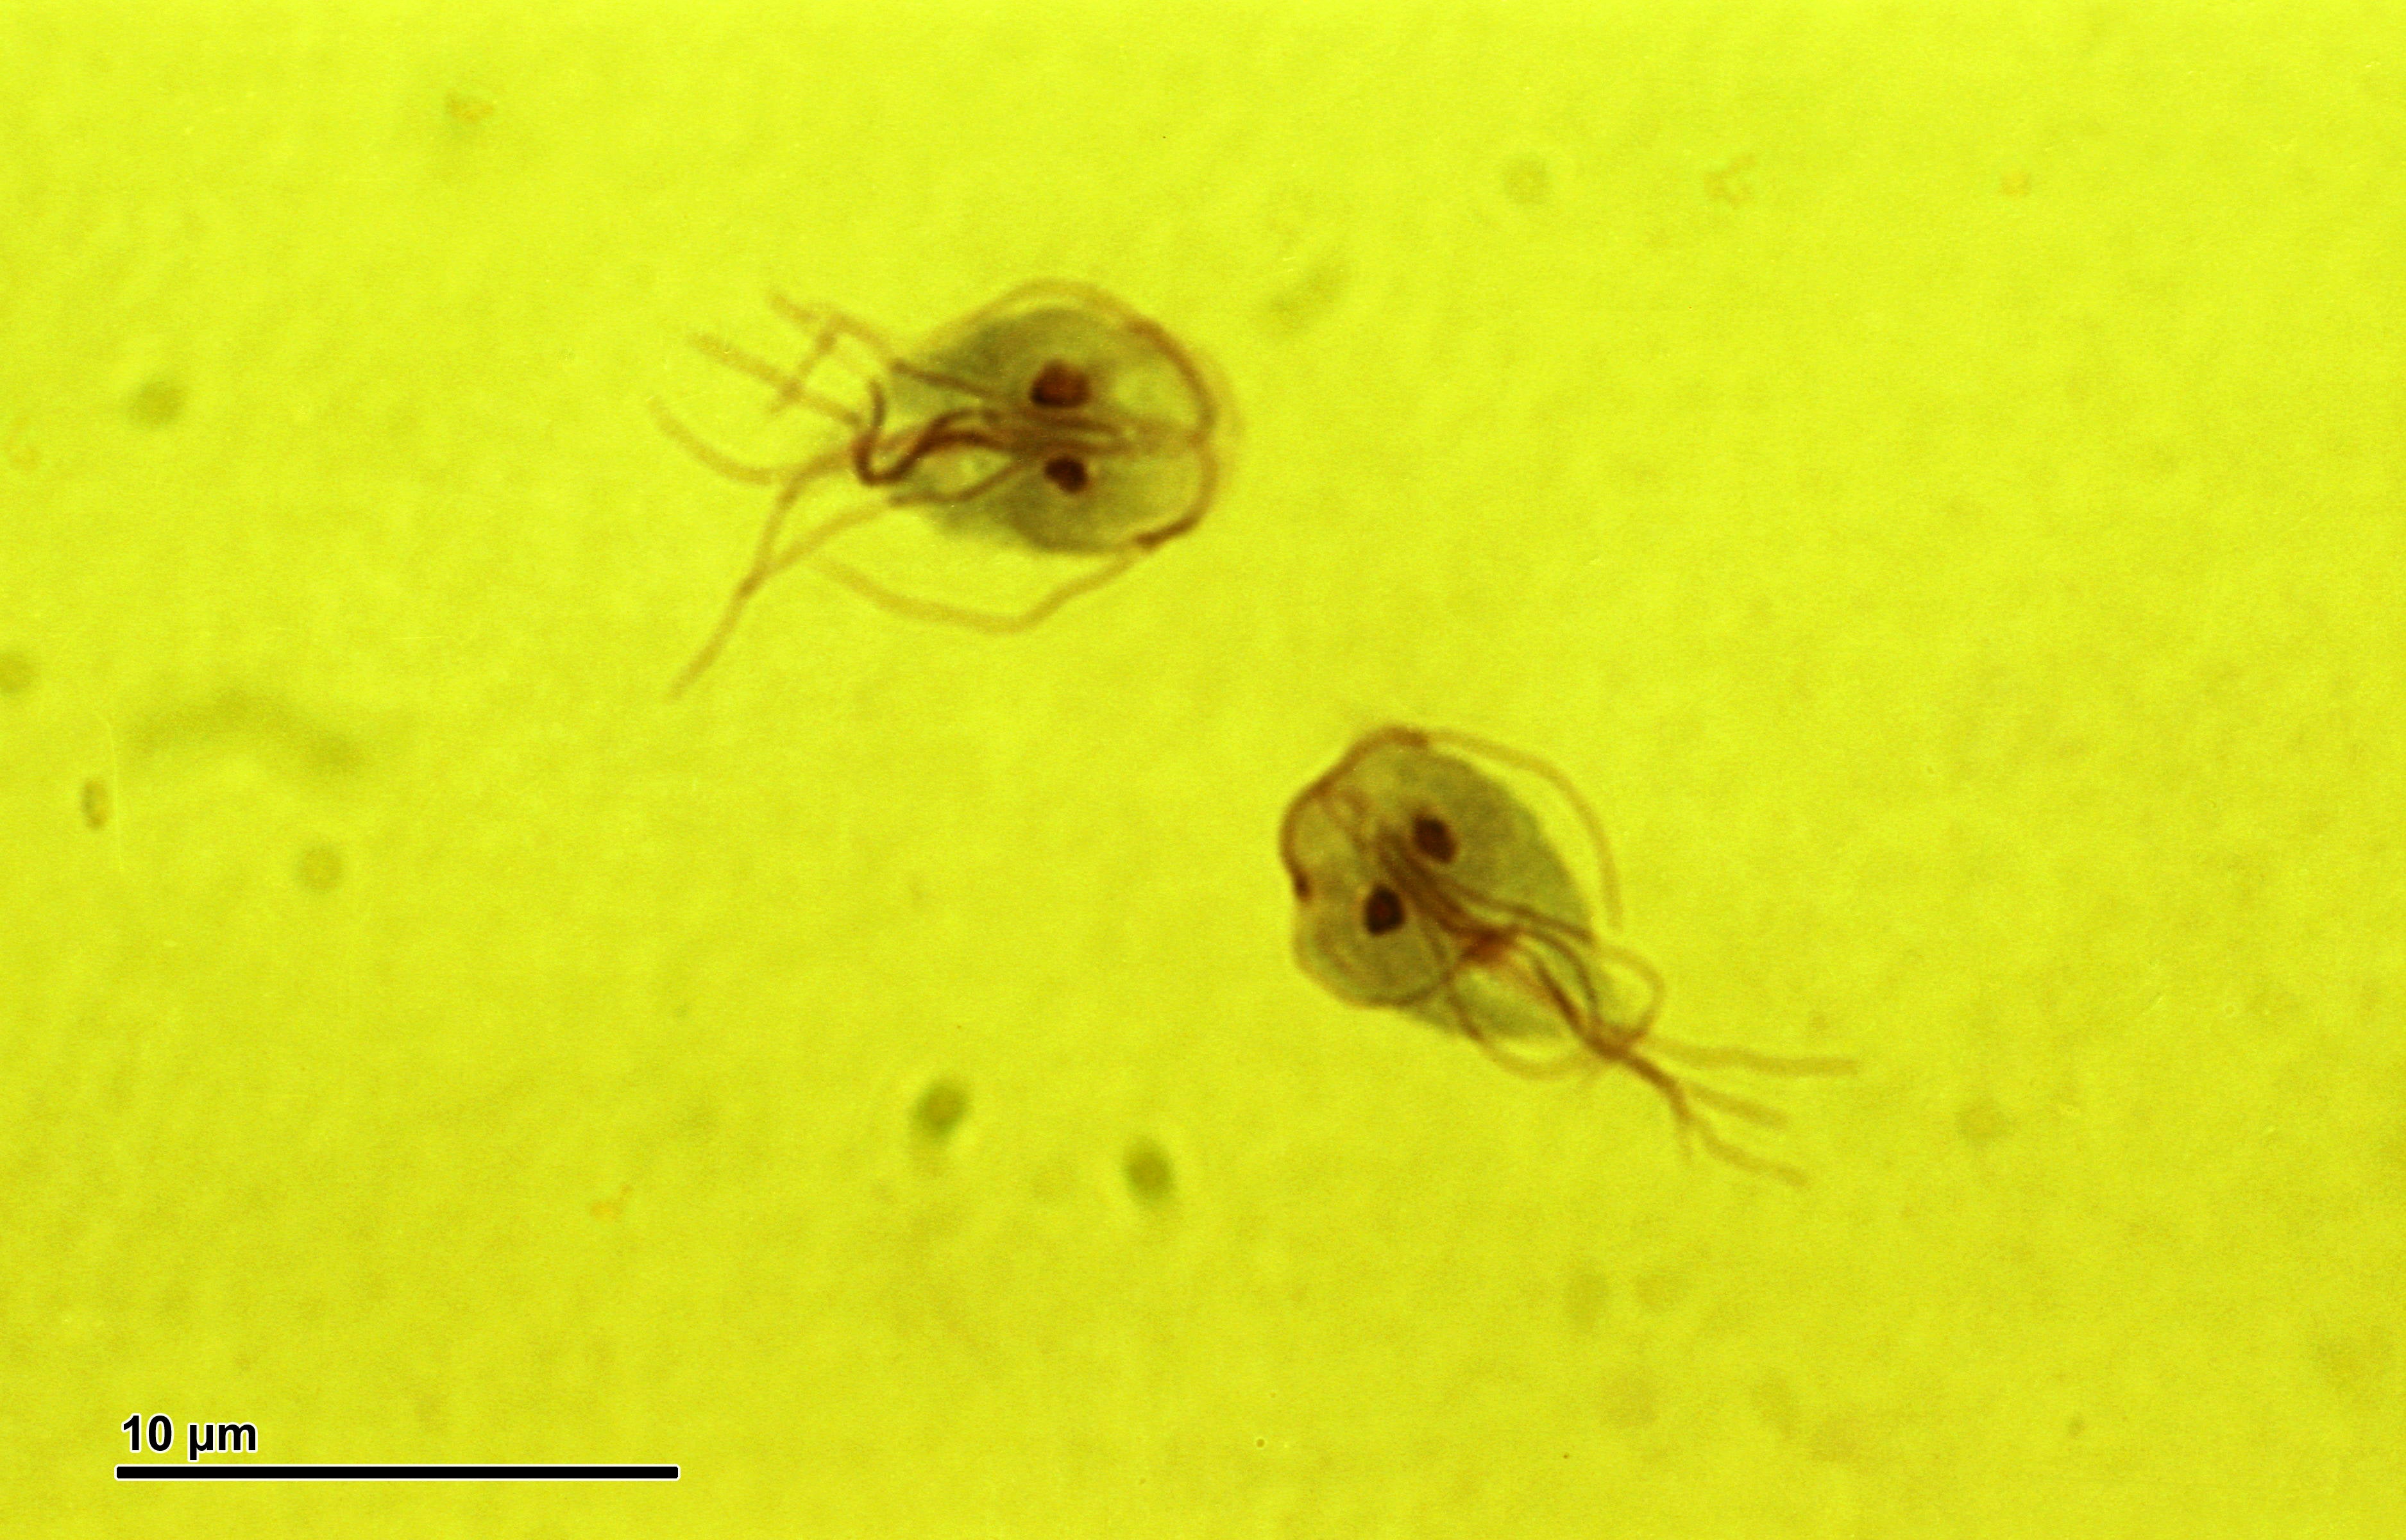 Giardia parasites